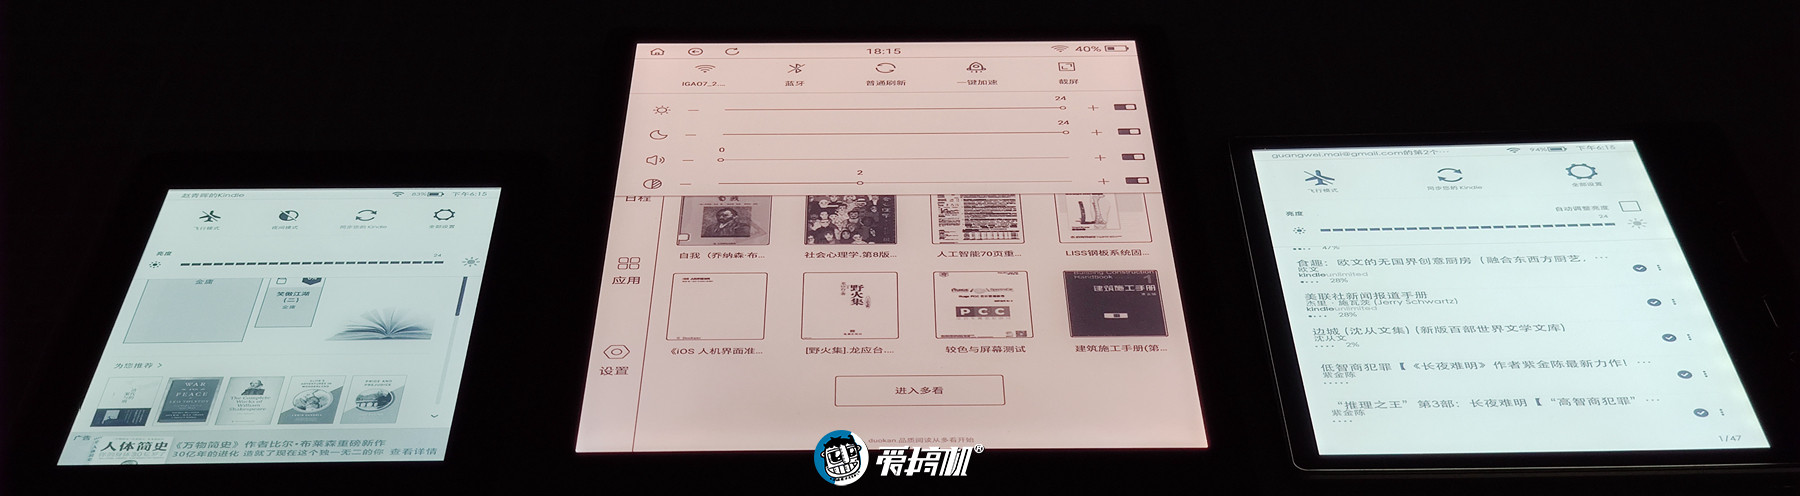 10寸真香电纸书 墨案InkPad X评测